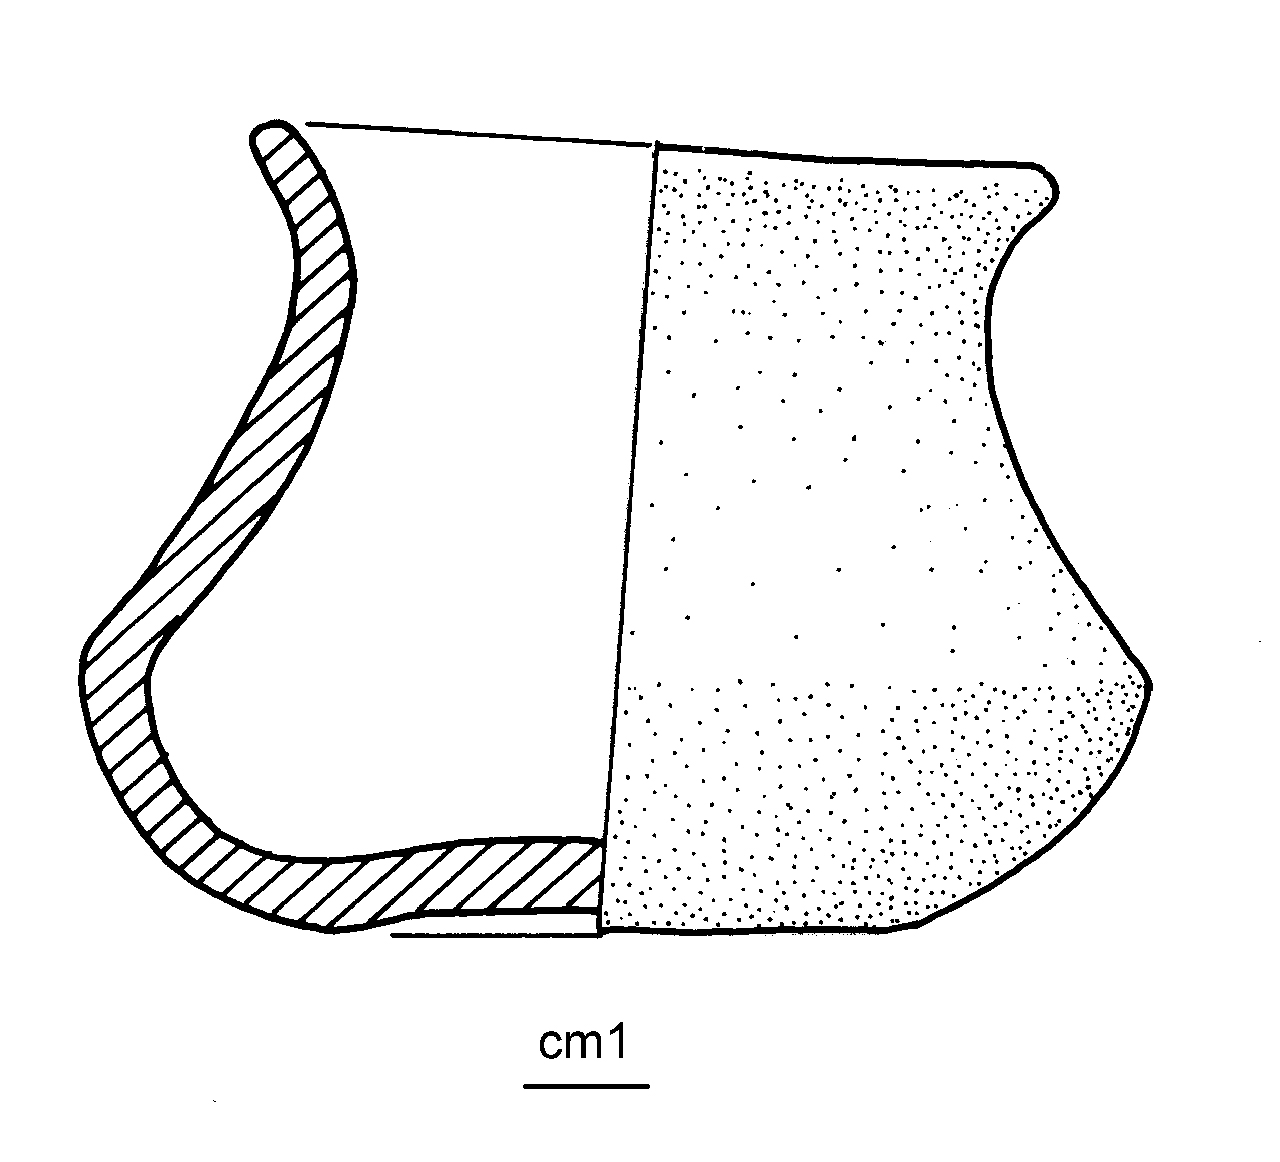 bicchiere carenato - cultura ligure dell'età del Ferro (media età del Ferro)